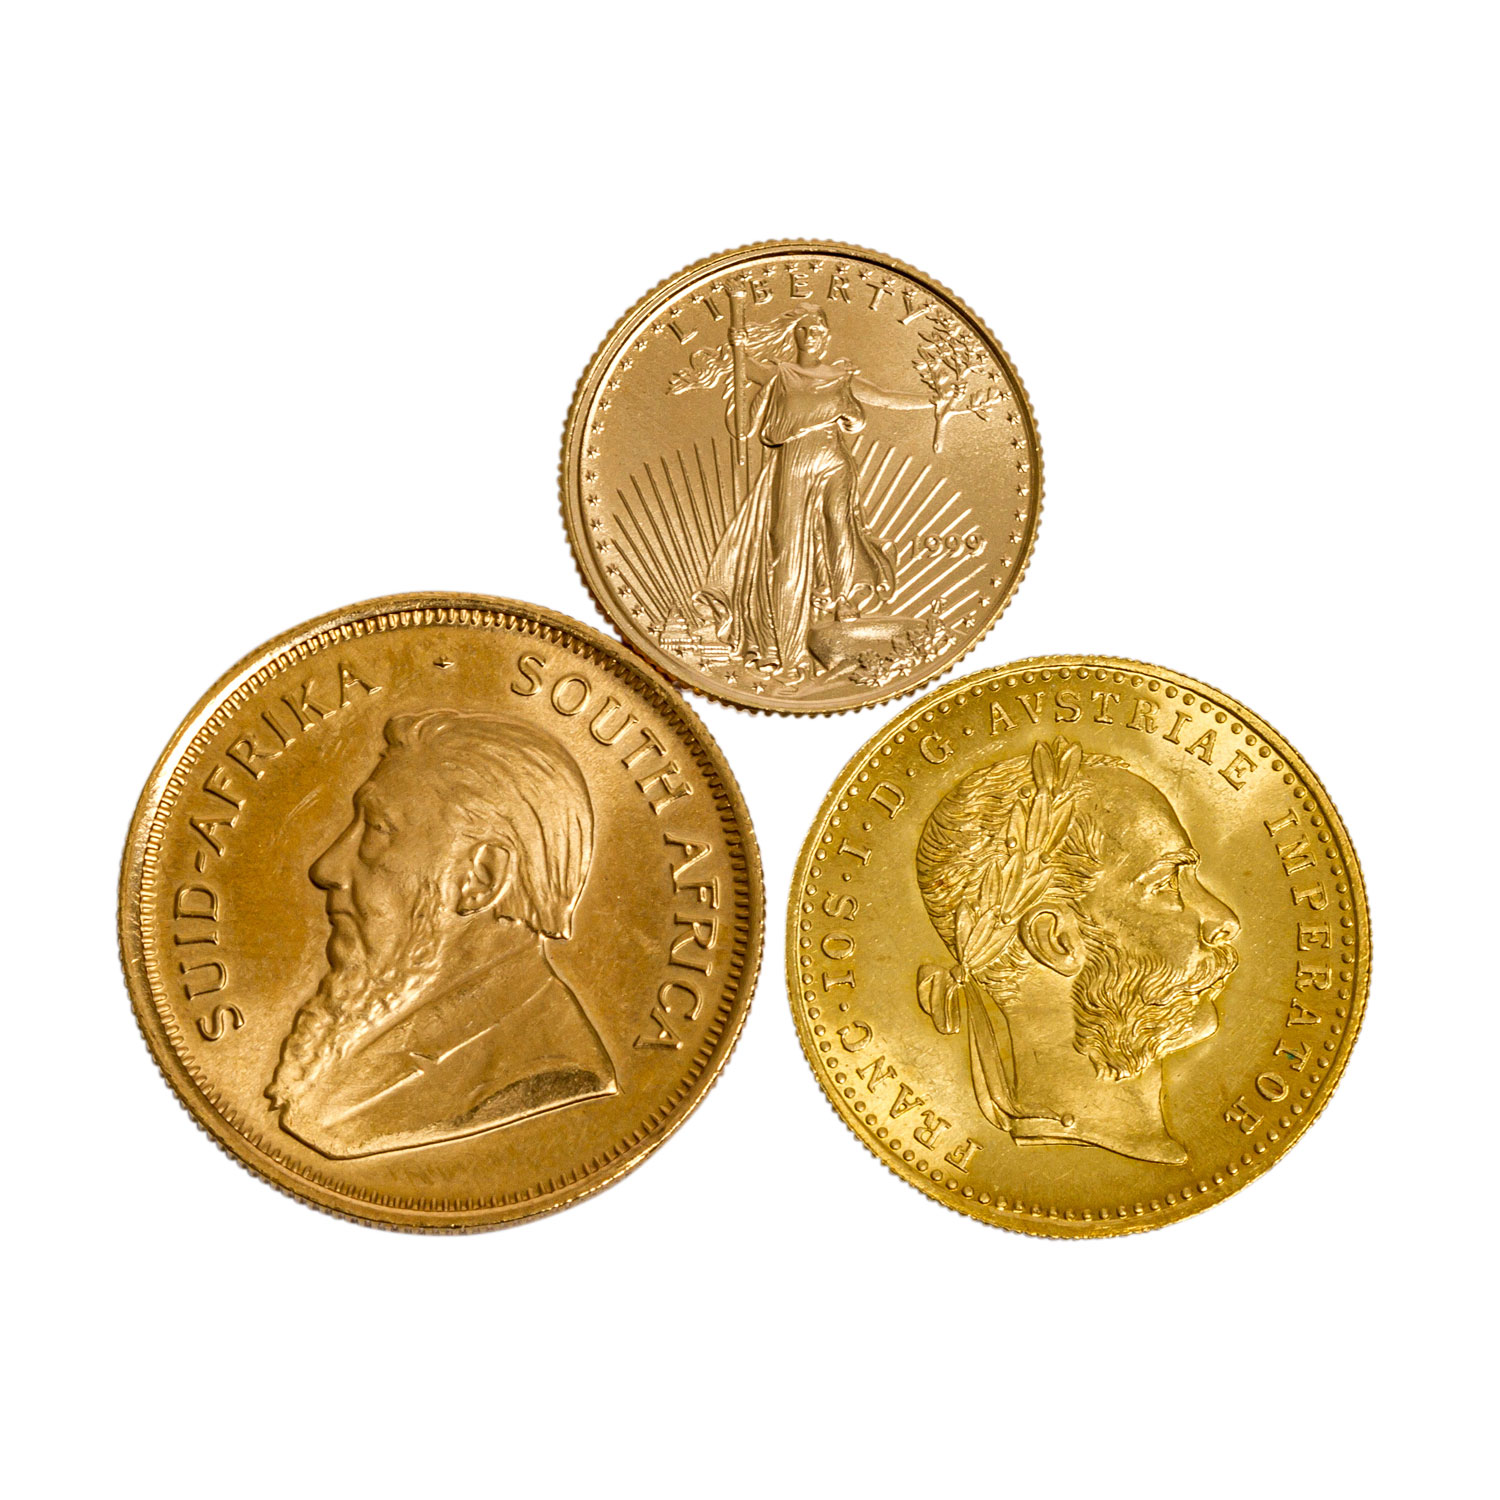 3 GOLDmünzen - 1/4 Unze Krügerrand 1982, 1 Dukat 1915 NP sowie 1/10 Unze Eagle 1999. Erhaltungen